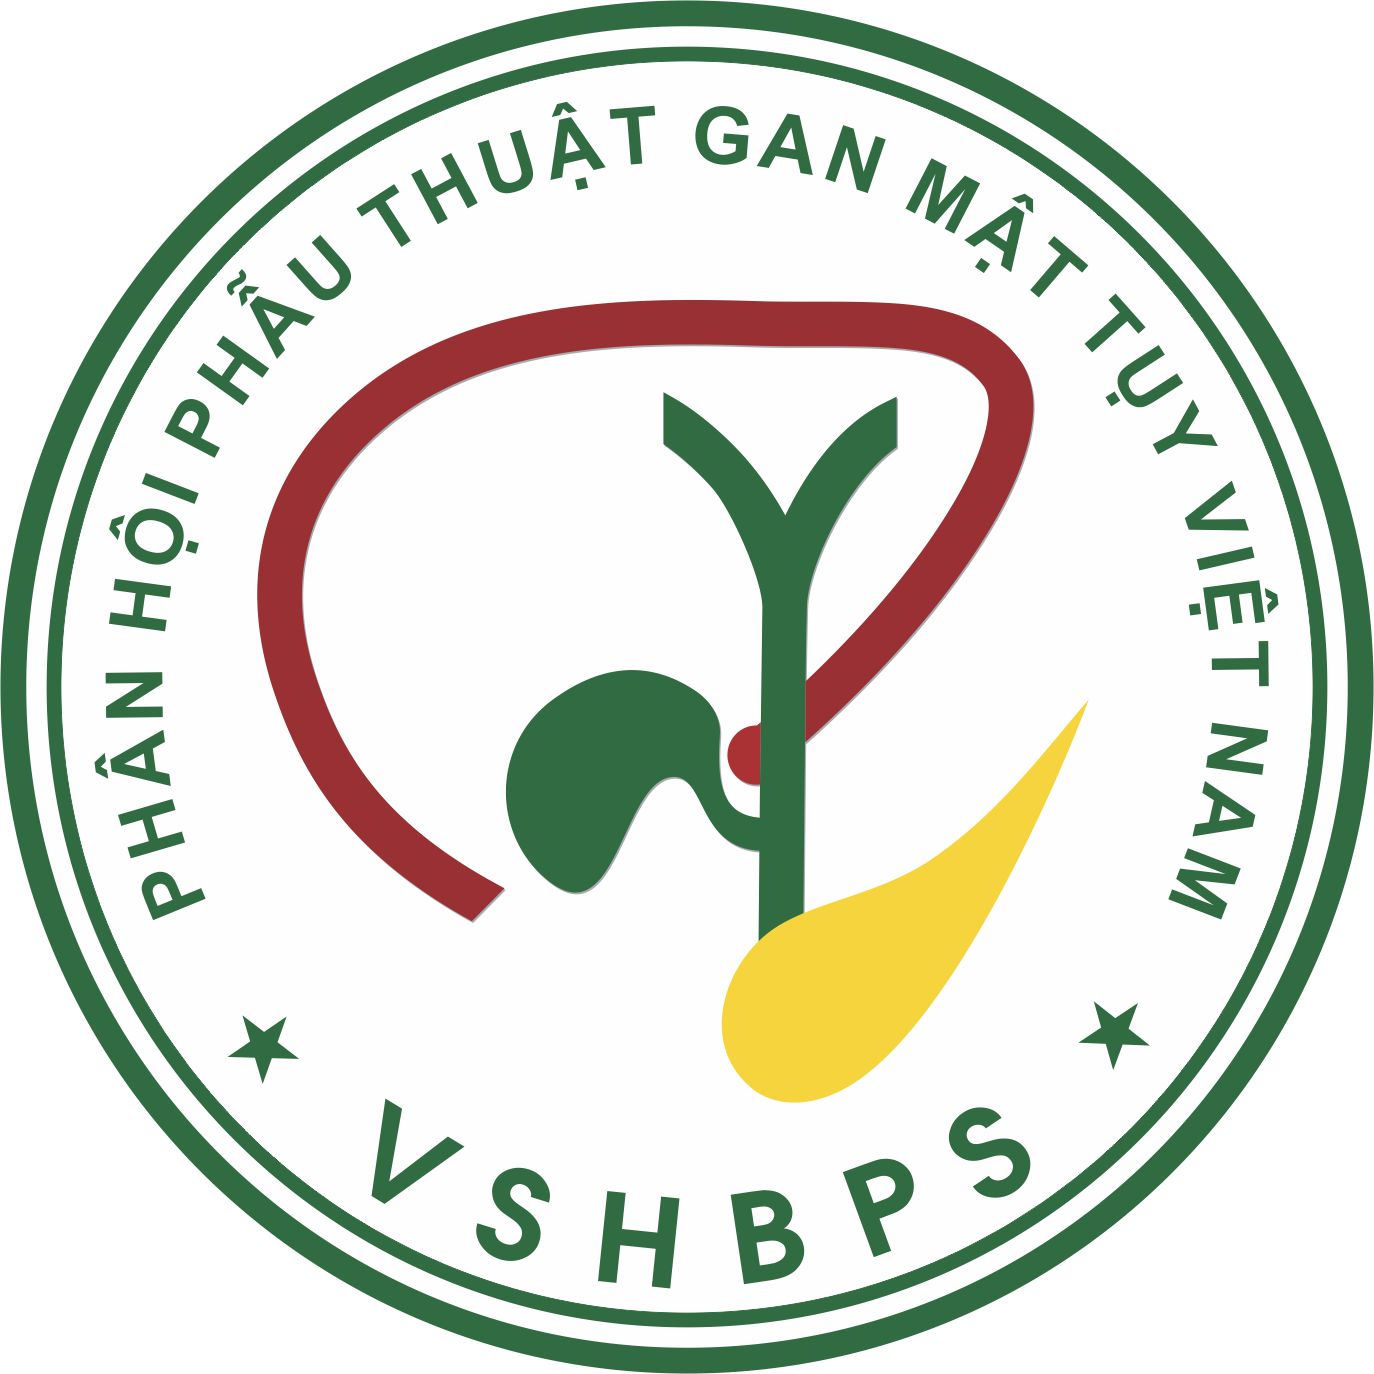 Phân hội phẫu thuật gan mật tụy Việt Nam là thành viên chính thức của hiệp hội Gan - Mật - Tụy Quốc tế & Hội Gan - Mật - Tụy Châu Á - Thái Bình Dương